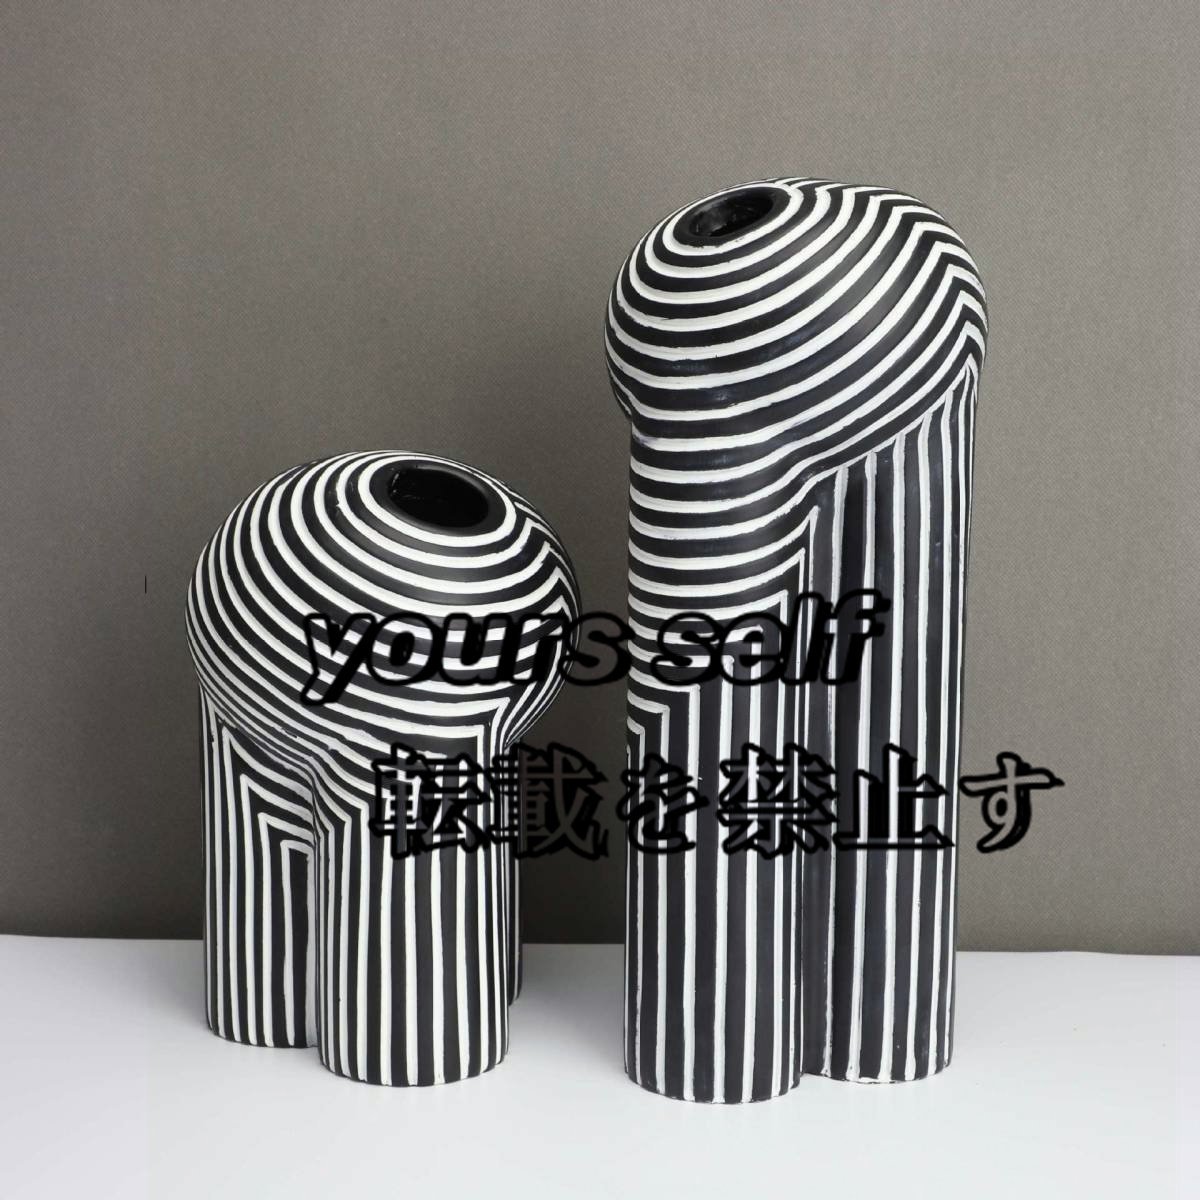 ヨーロピアンスタイルの花瓶 クリエイティブな白黒の縞模様 花器 モダン フラワーベース ブラック ホワイト ストライプ 2サイズ_画像2